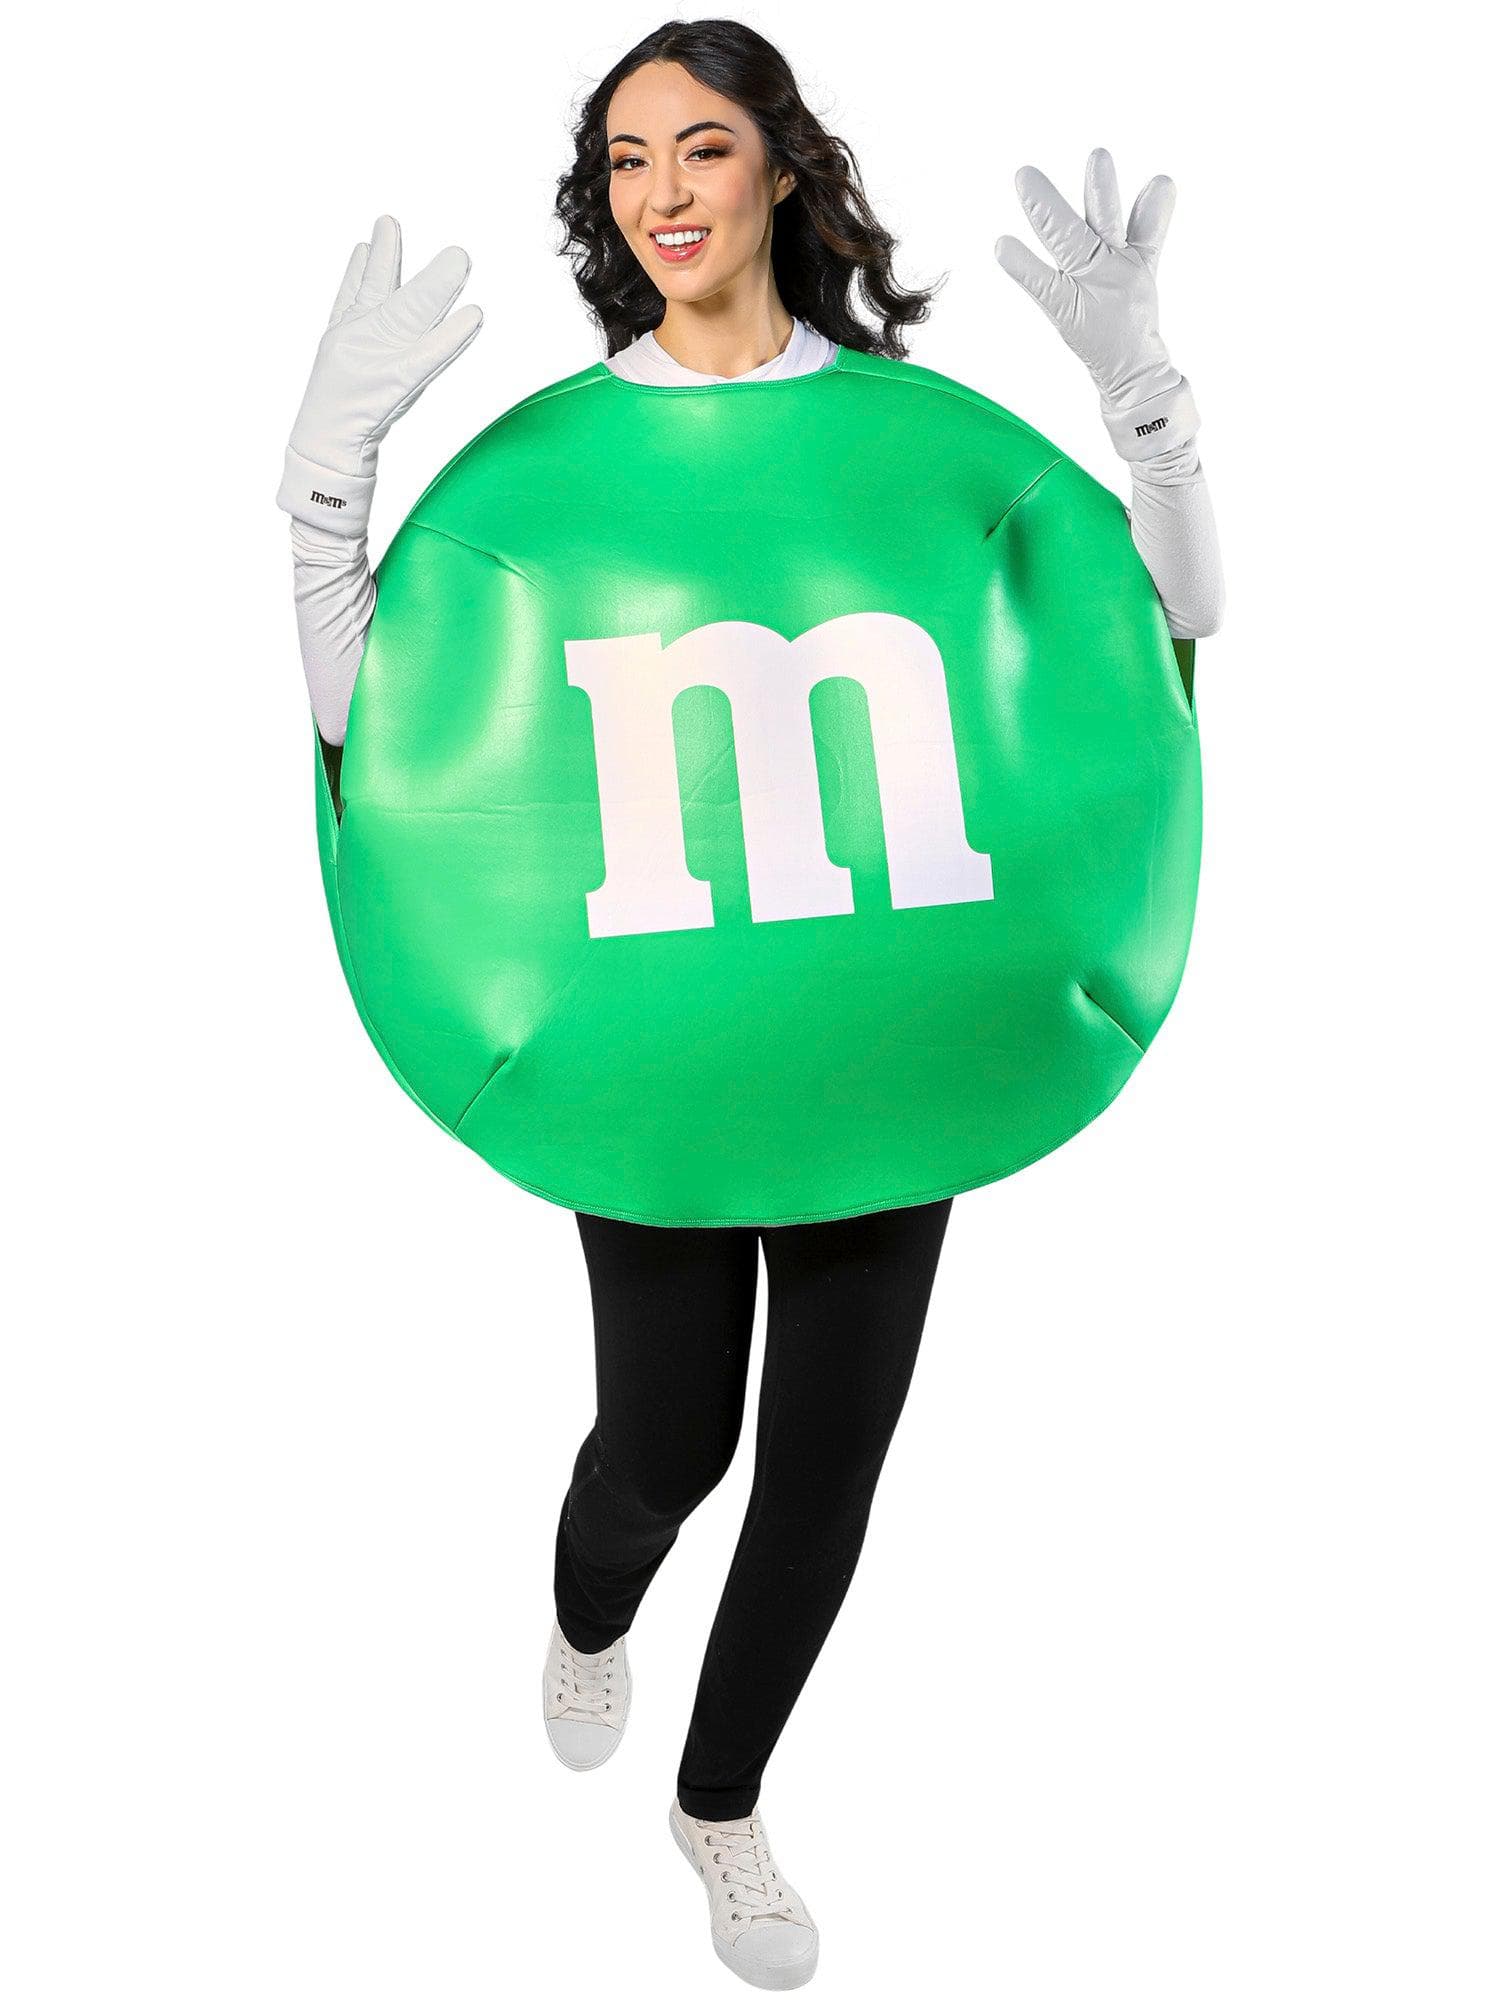 M&M's Green Adult Costume - costumes.com